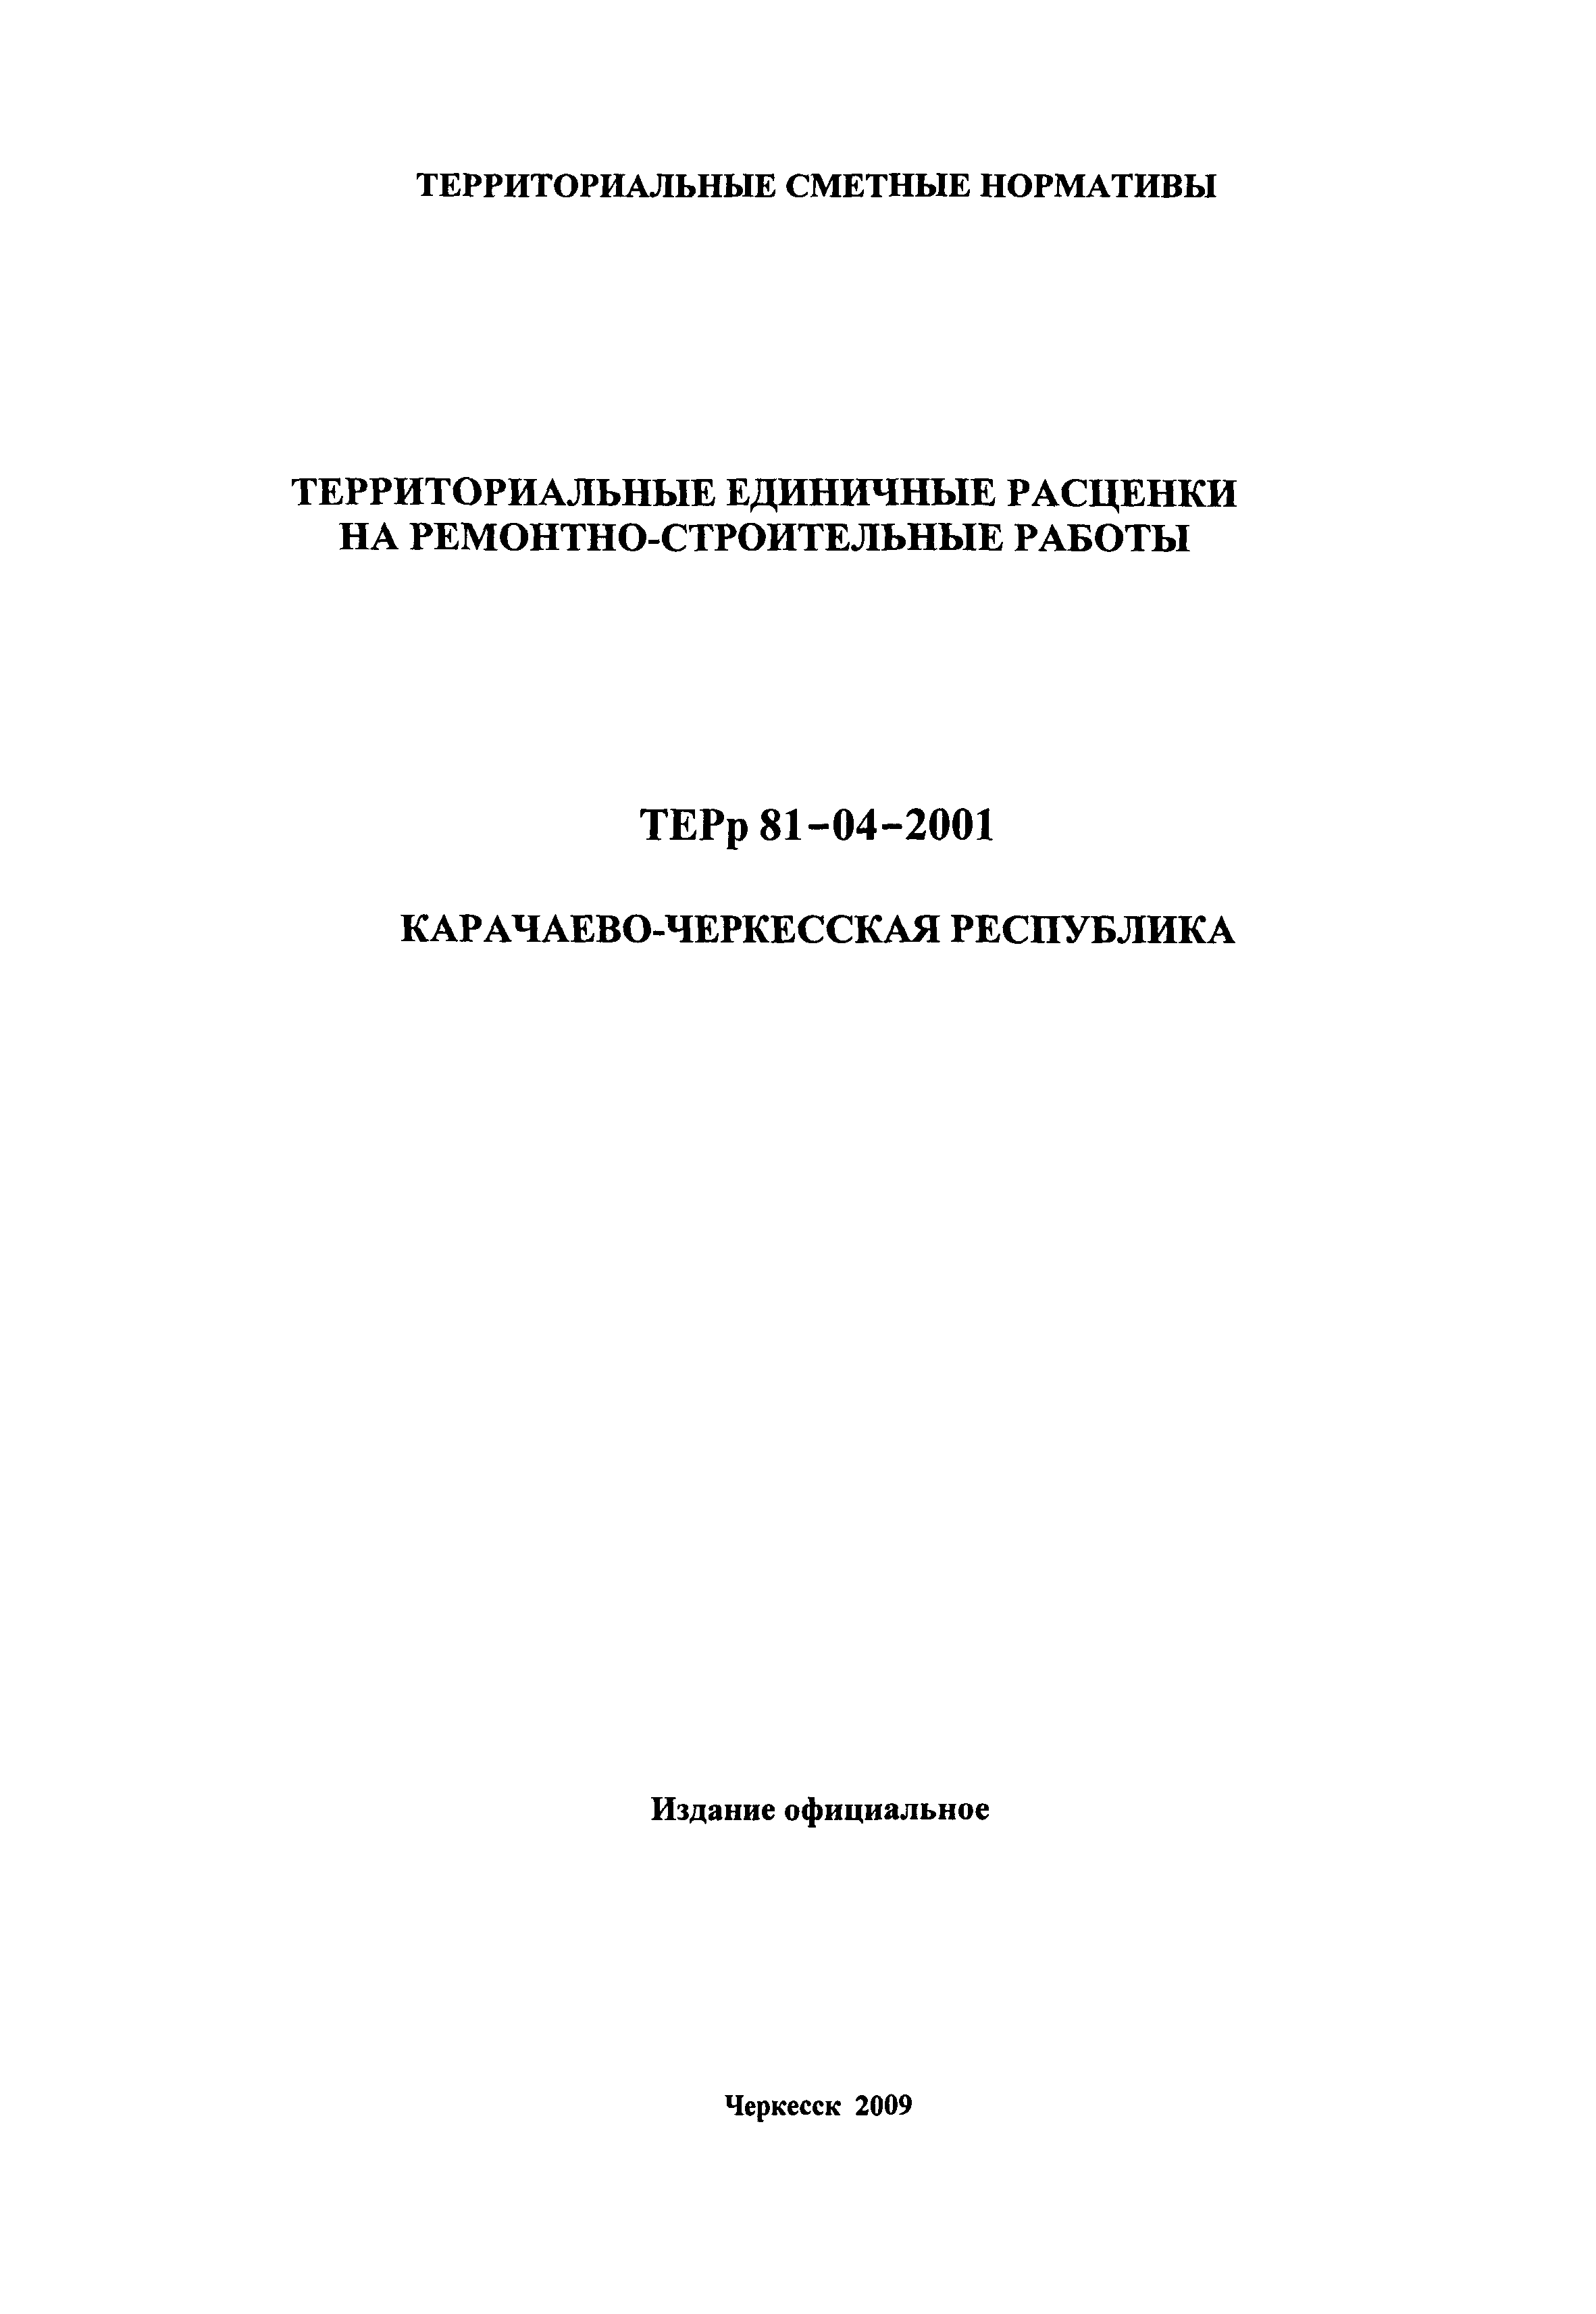 ТЕРр Карачаево-Черкесская Республика 2001-59